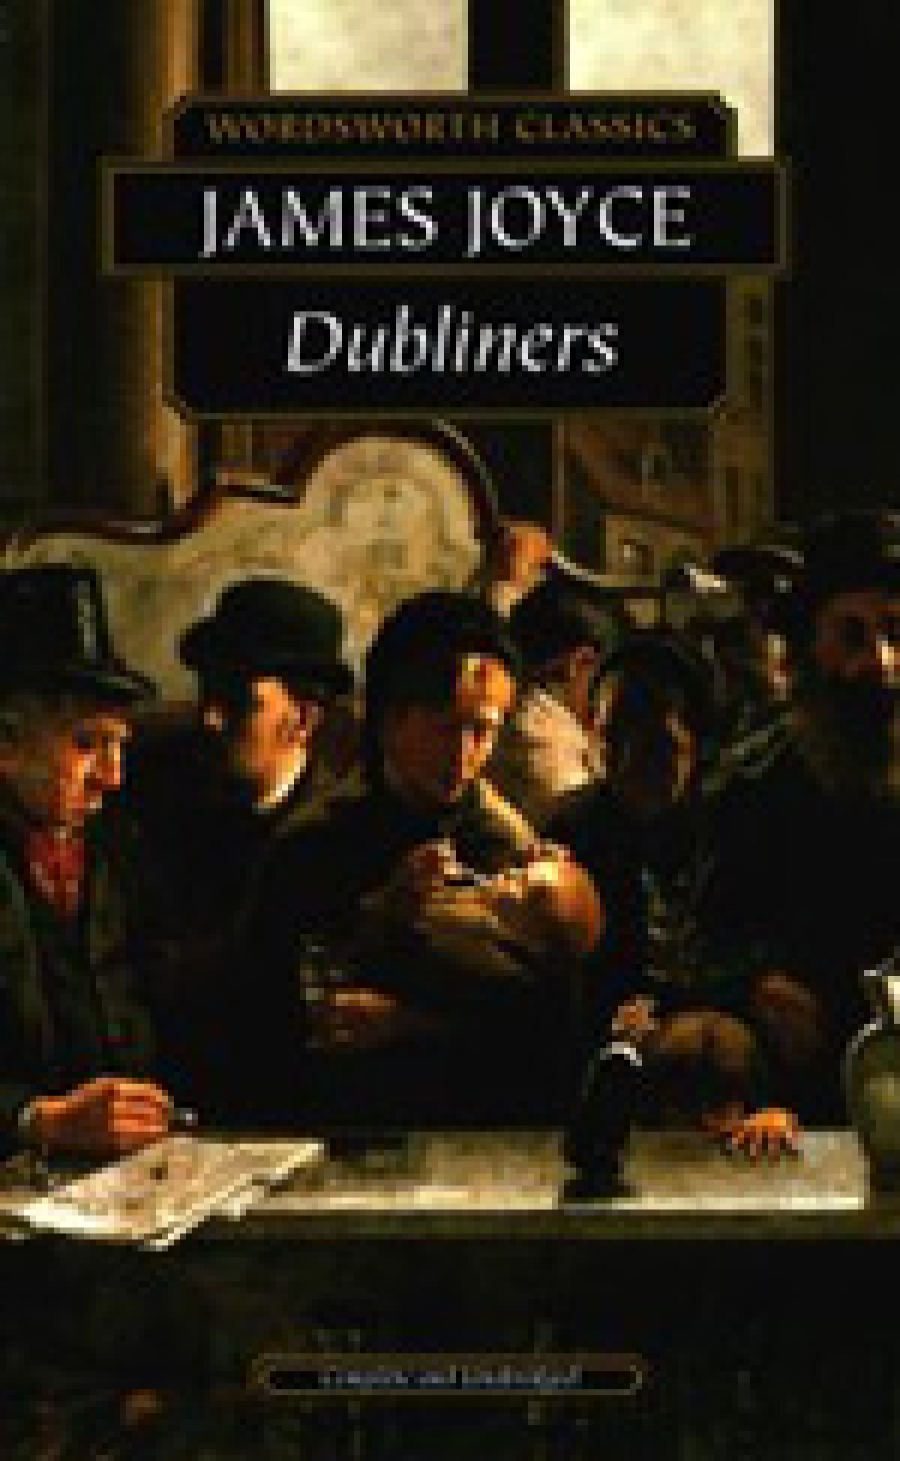 Joyce Dubliners 